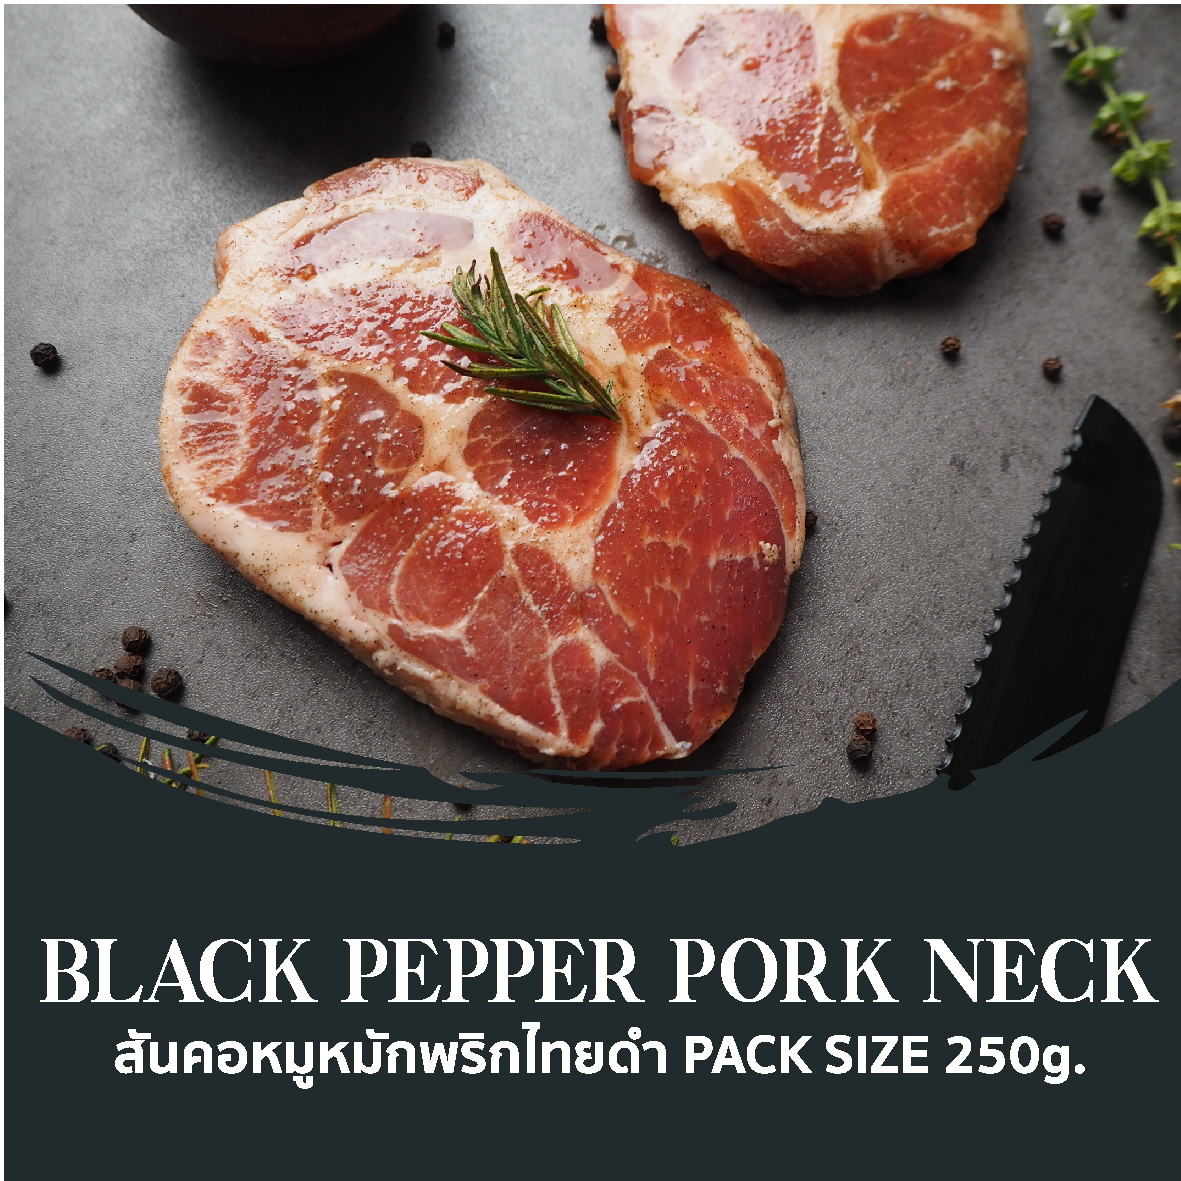 Black Pepper Pork Neck Steak